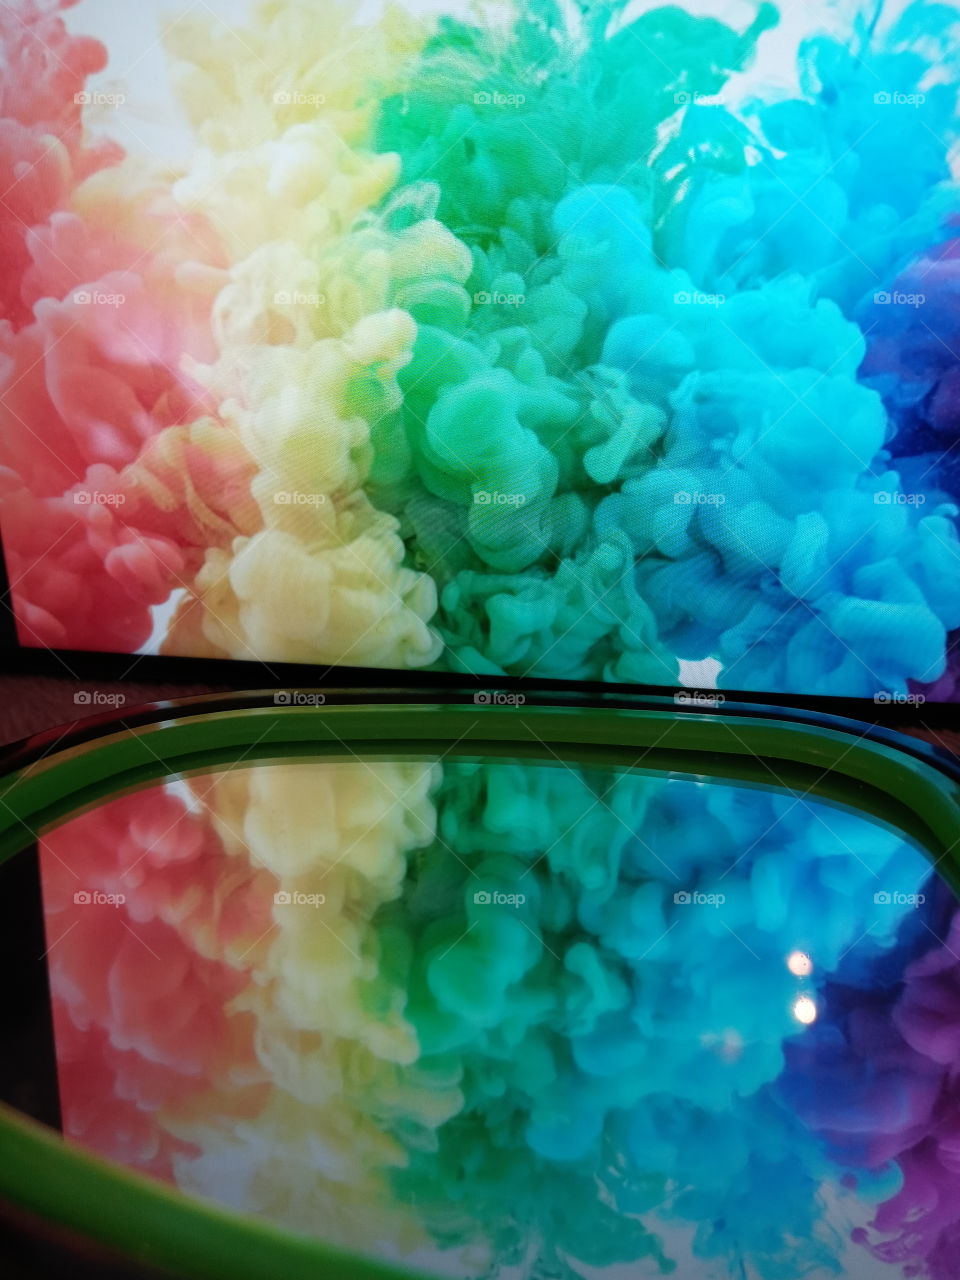 Humo con colores de arcoiris reflejado en un espejo.